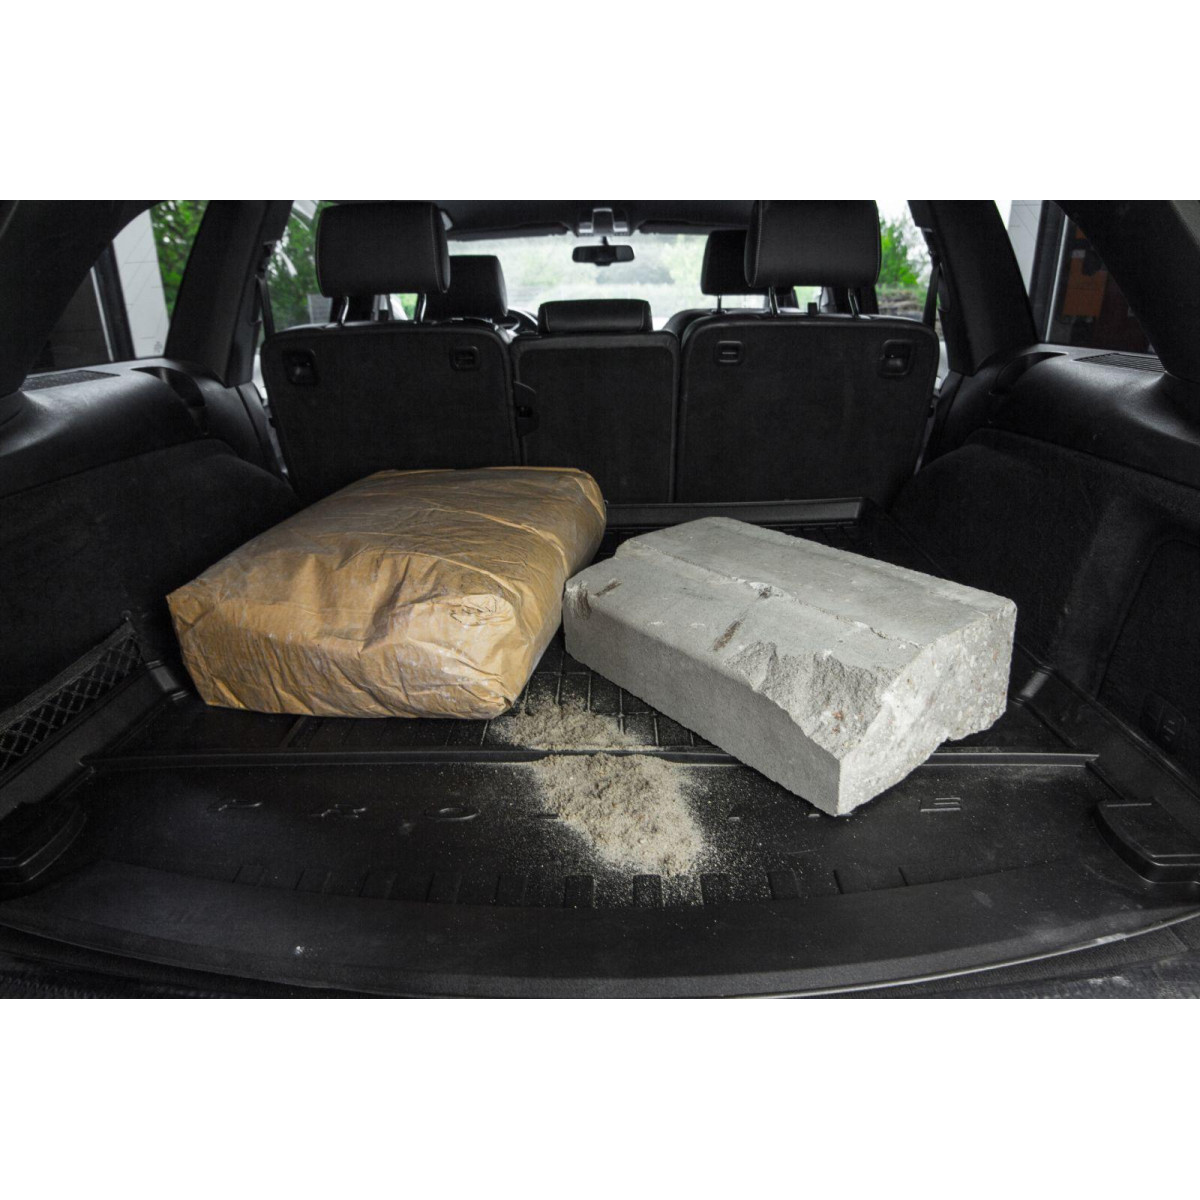 Guminis bagažinės kilimėlis Proline Hyundai i30 II 2011-2017m. / Hatchback / paaukštintais kraštais